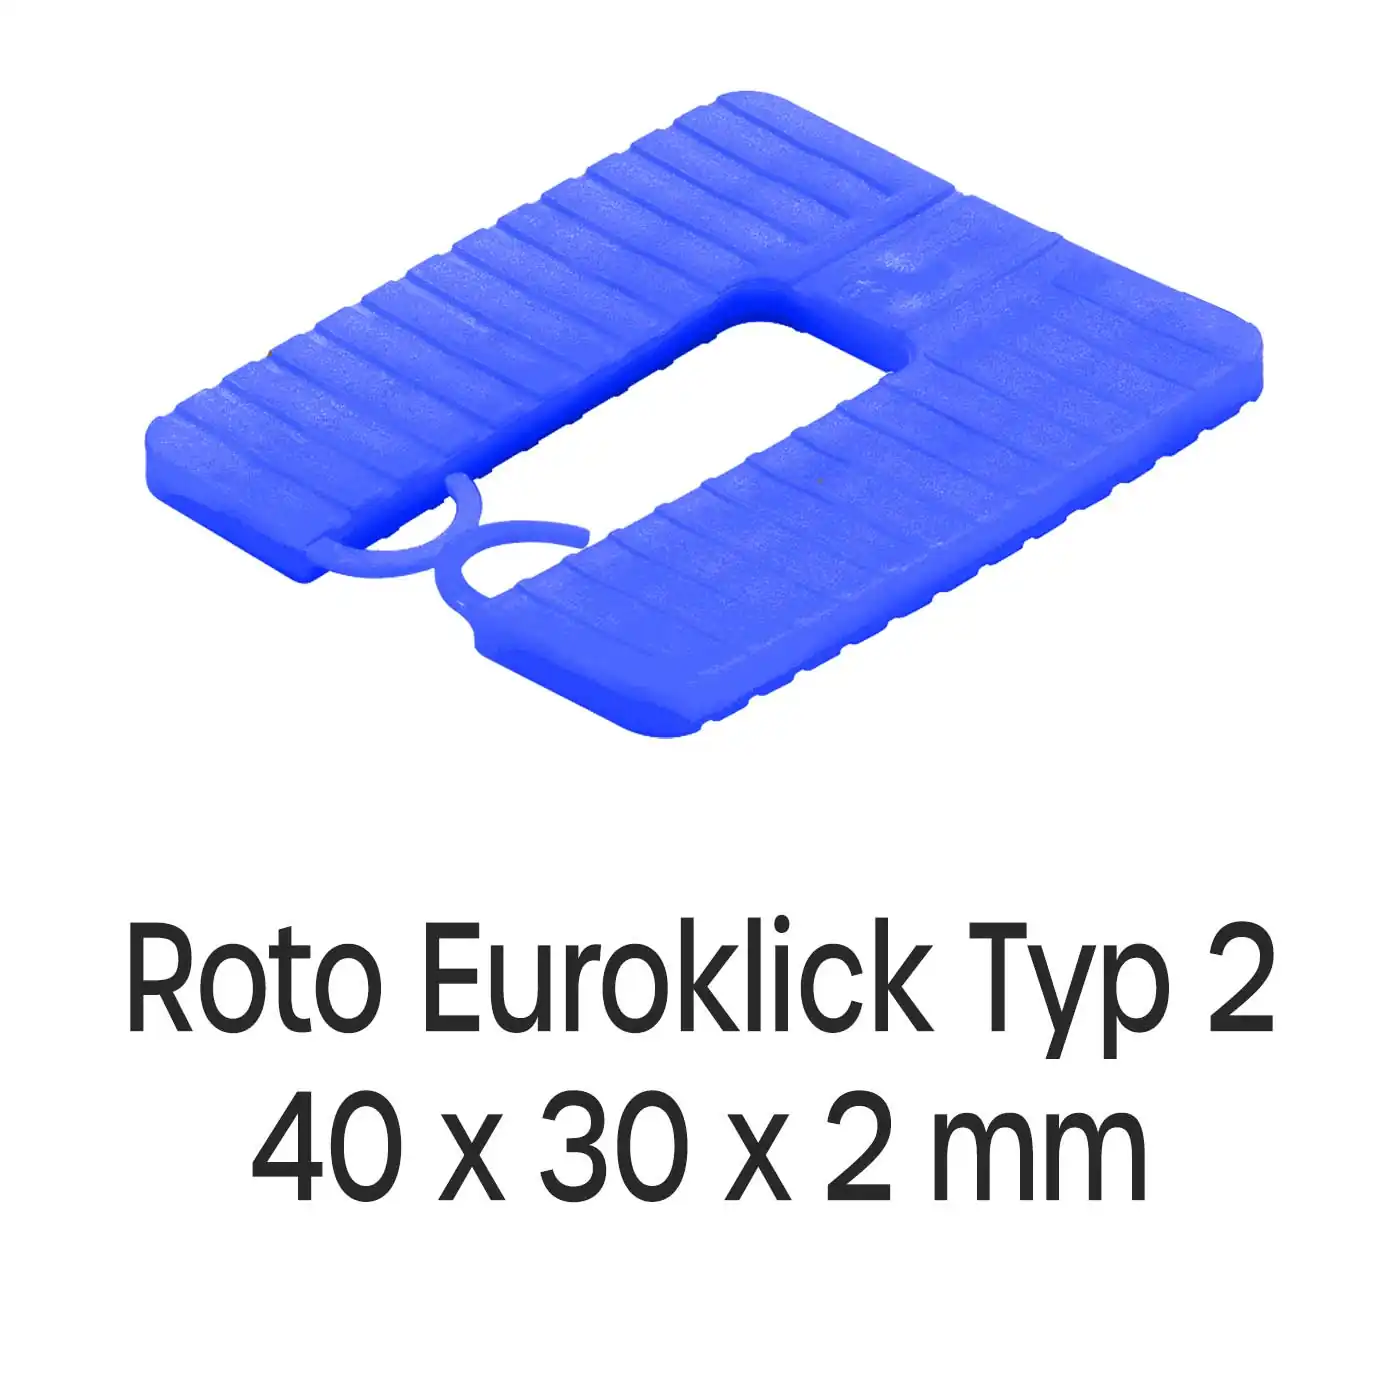 Distanzplatten Roto Euroklick Typ 2 40 x 30 x 2 mm 1000 Stück